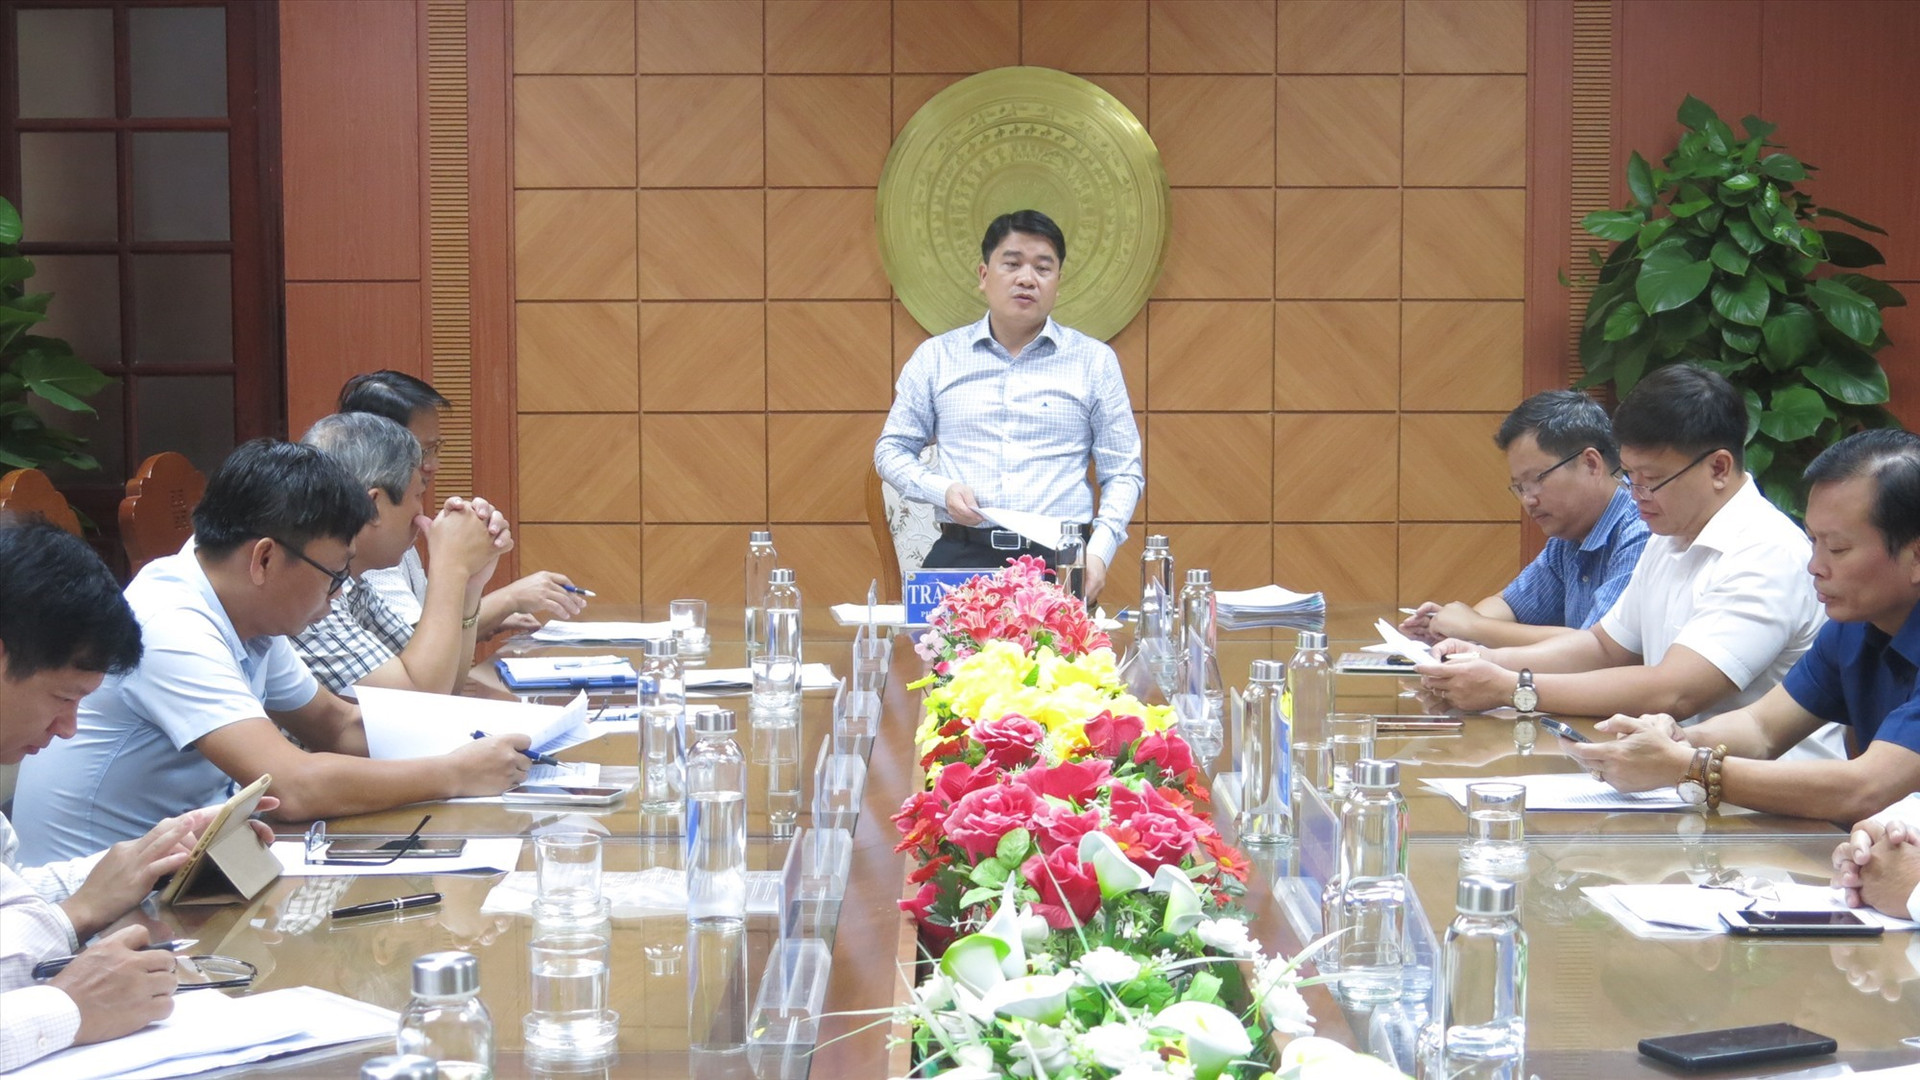 Phó chủ tịch UBND tỉnh Trần Văn Tân chủ trì phiên họp về các dự án thuộc lĩnh vực y tế theo Chương trình phục hồi kinh tế - xã hội